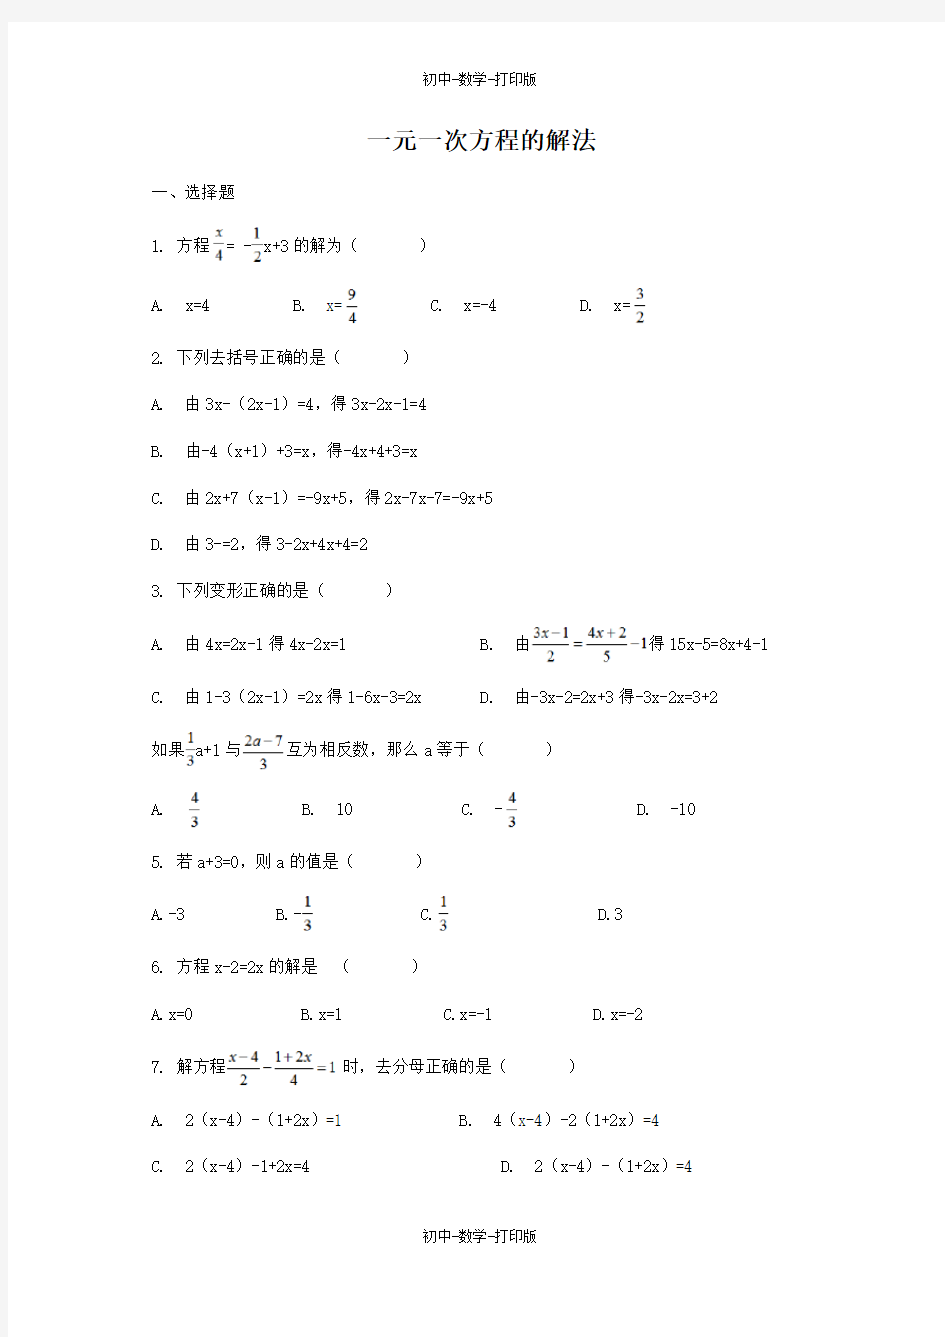 青岛版-数学-七年级上册-一元一次方程的解法 作业